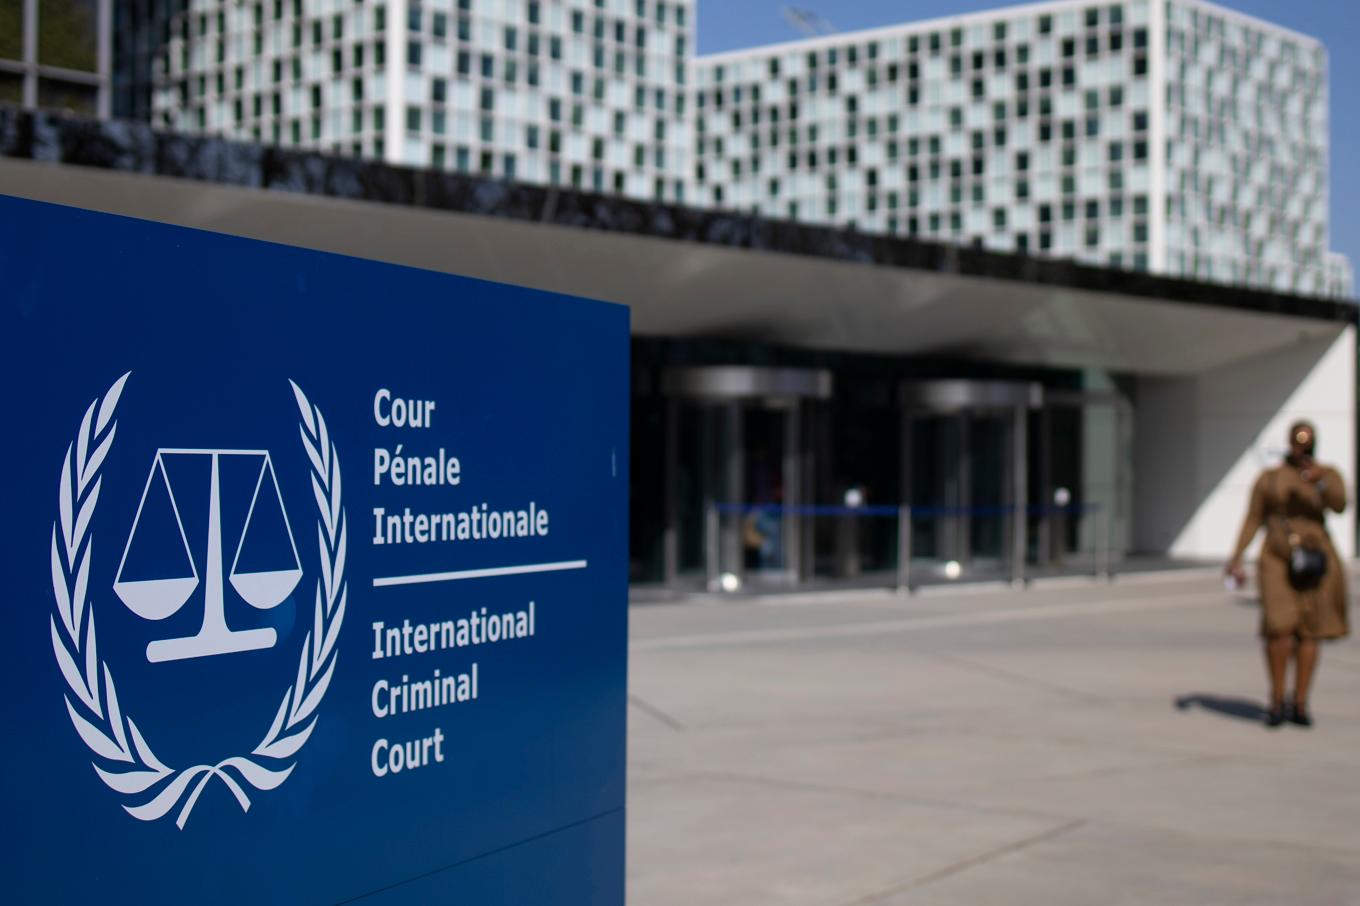 ICC i Haag utfärdar arresteringsorder för två ryska militärer. Foto: Peter Dejong/AP/TT